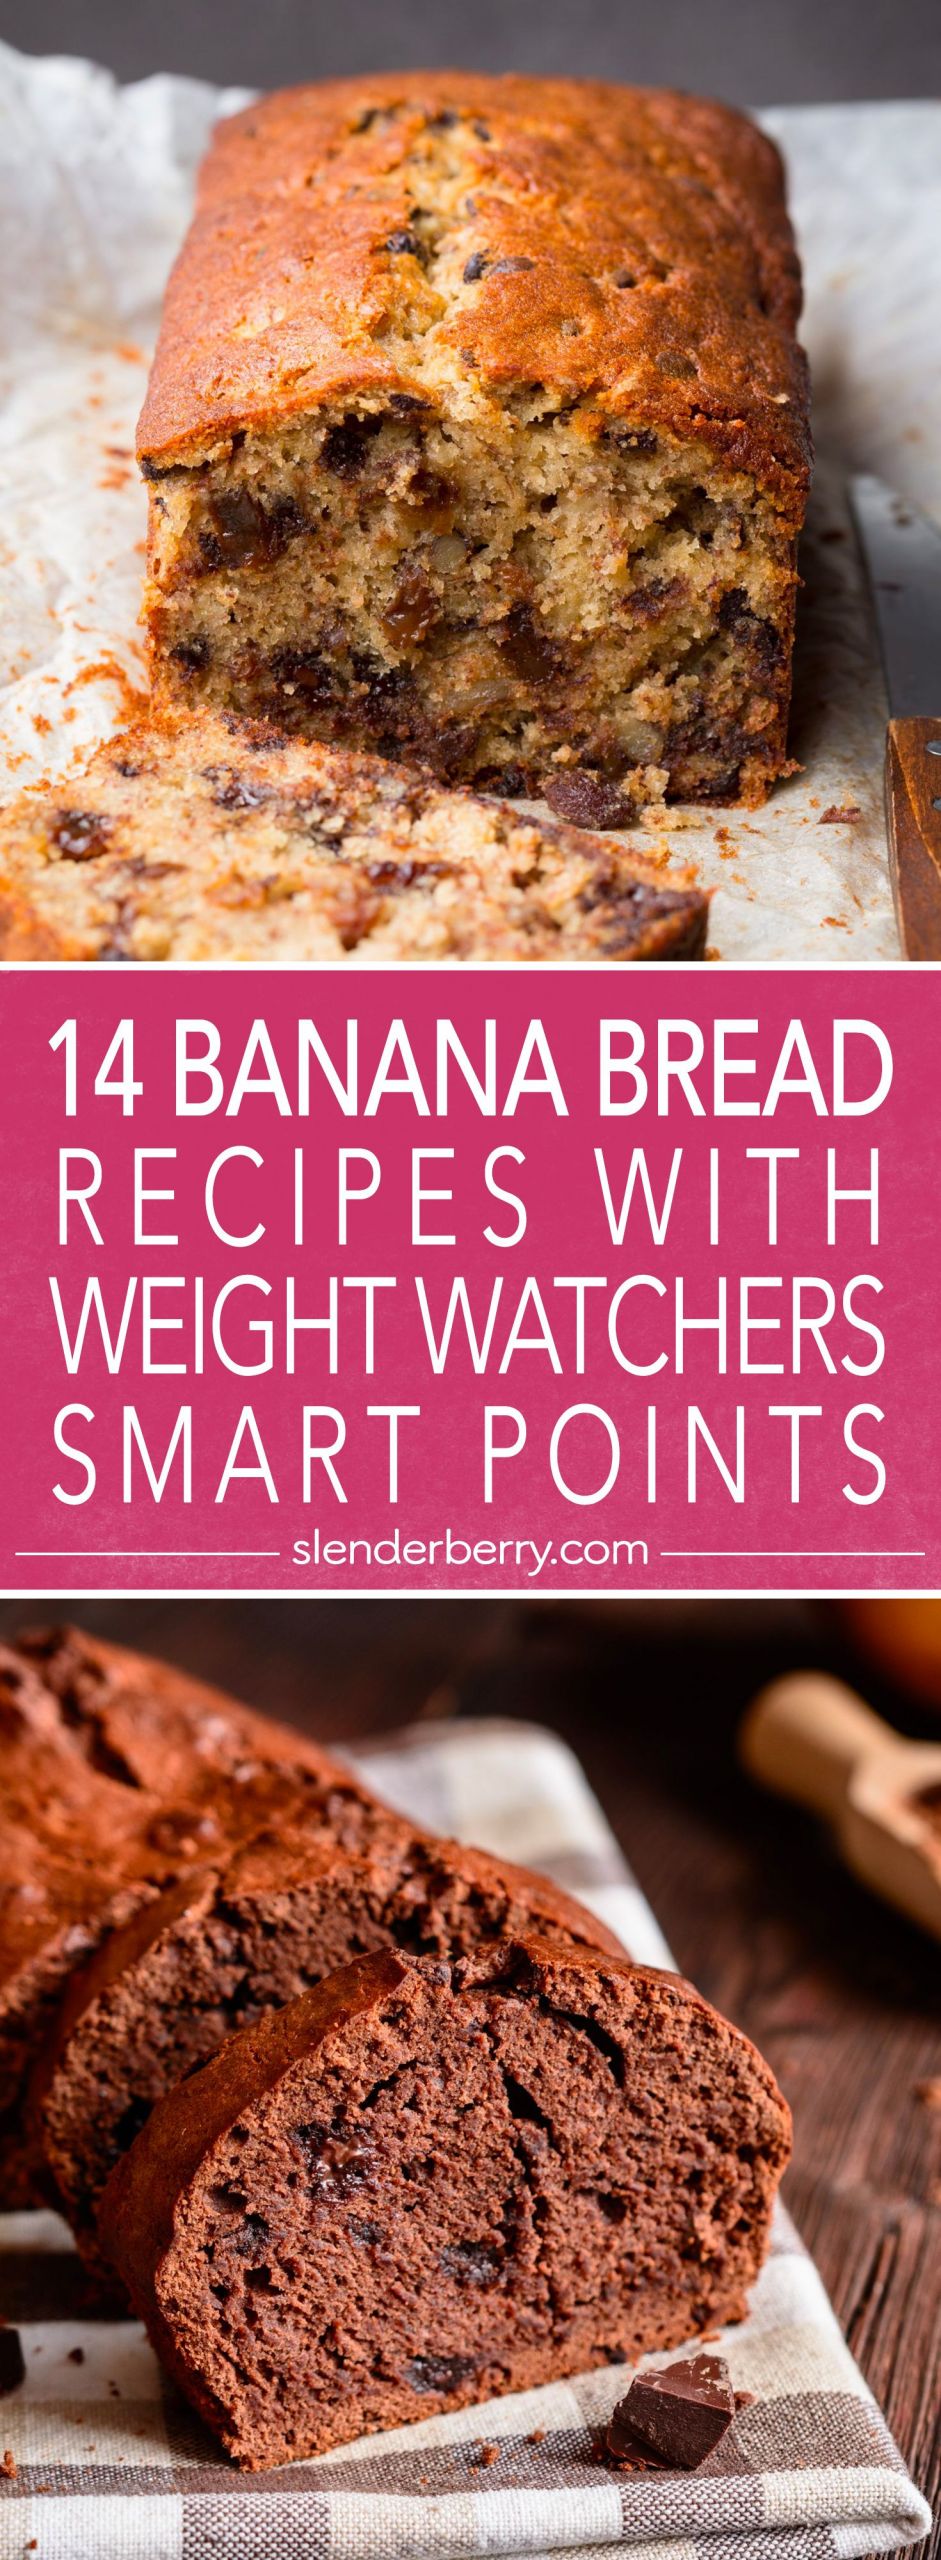 Weight Watcher Banana Bread Recipes
 Best 22 Weight Watchers Banana Bread Recipe Home Family